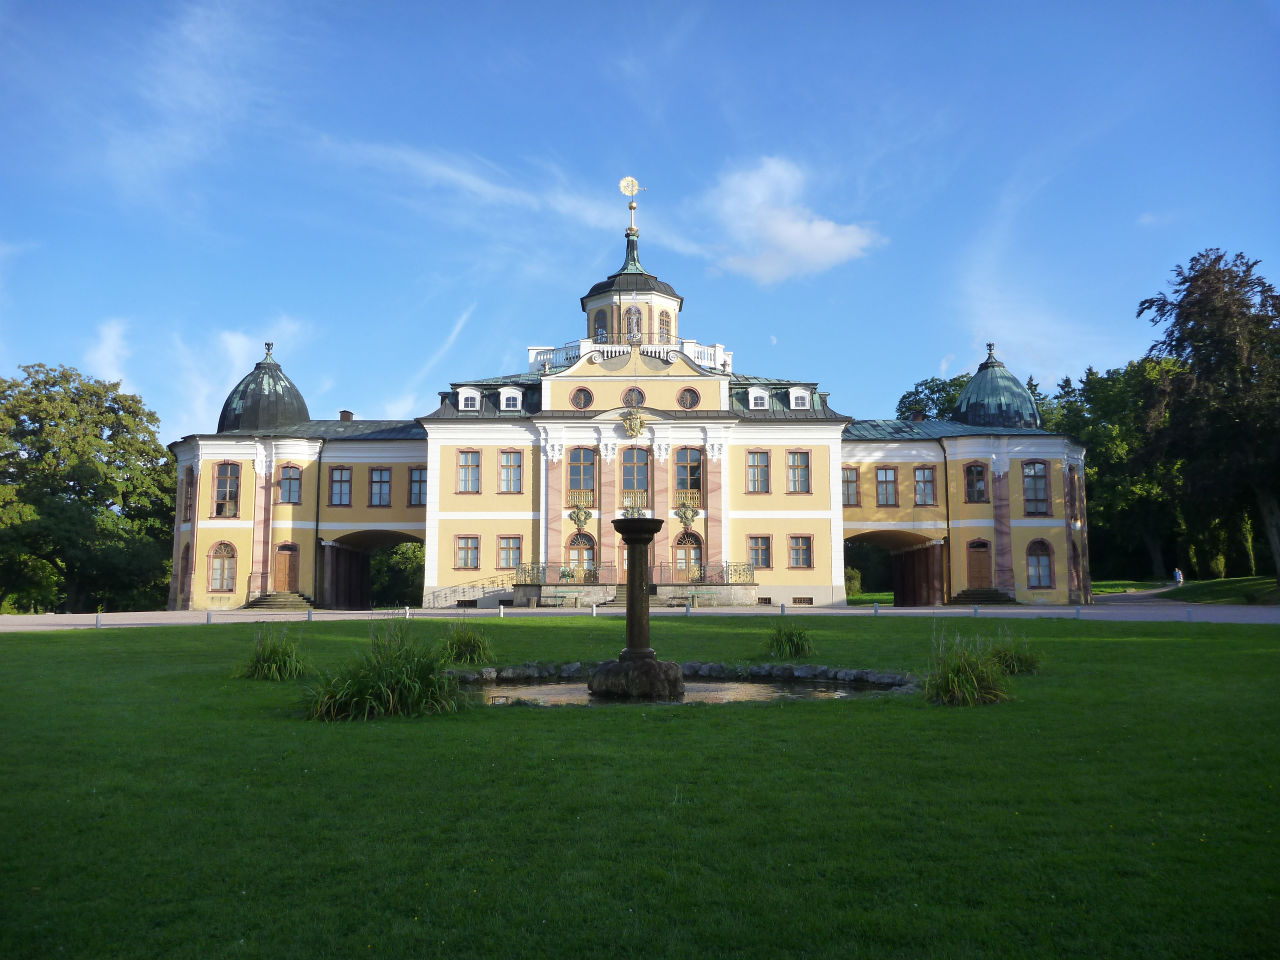 Замок и Парк Бельведер, Веймар / Schloss and Park Belvedere, Weimar